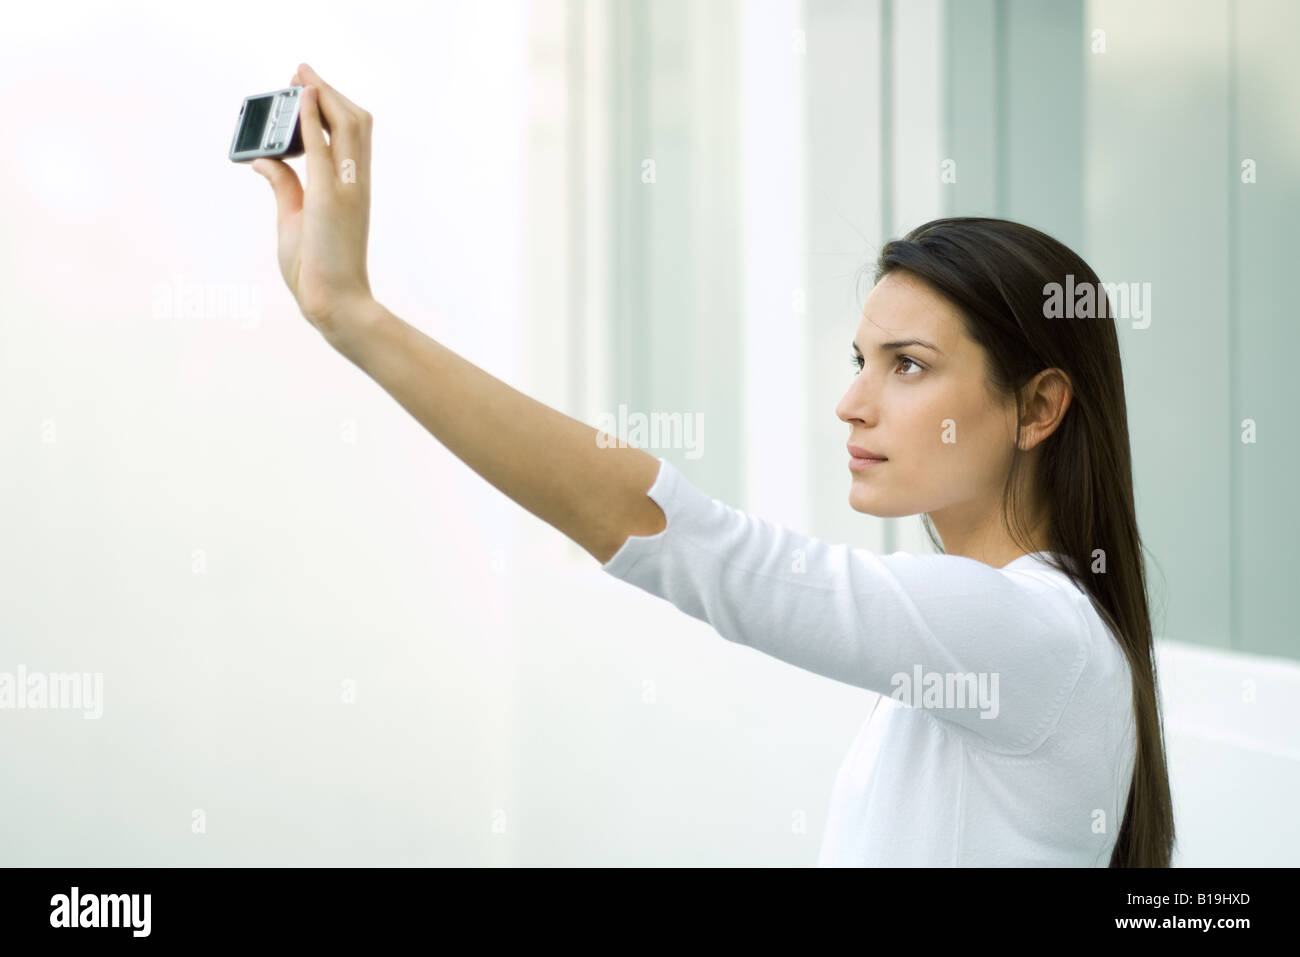 Frau fotografieren sich mit Schalltrichter, erhobenem arm Stockfoto